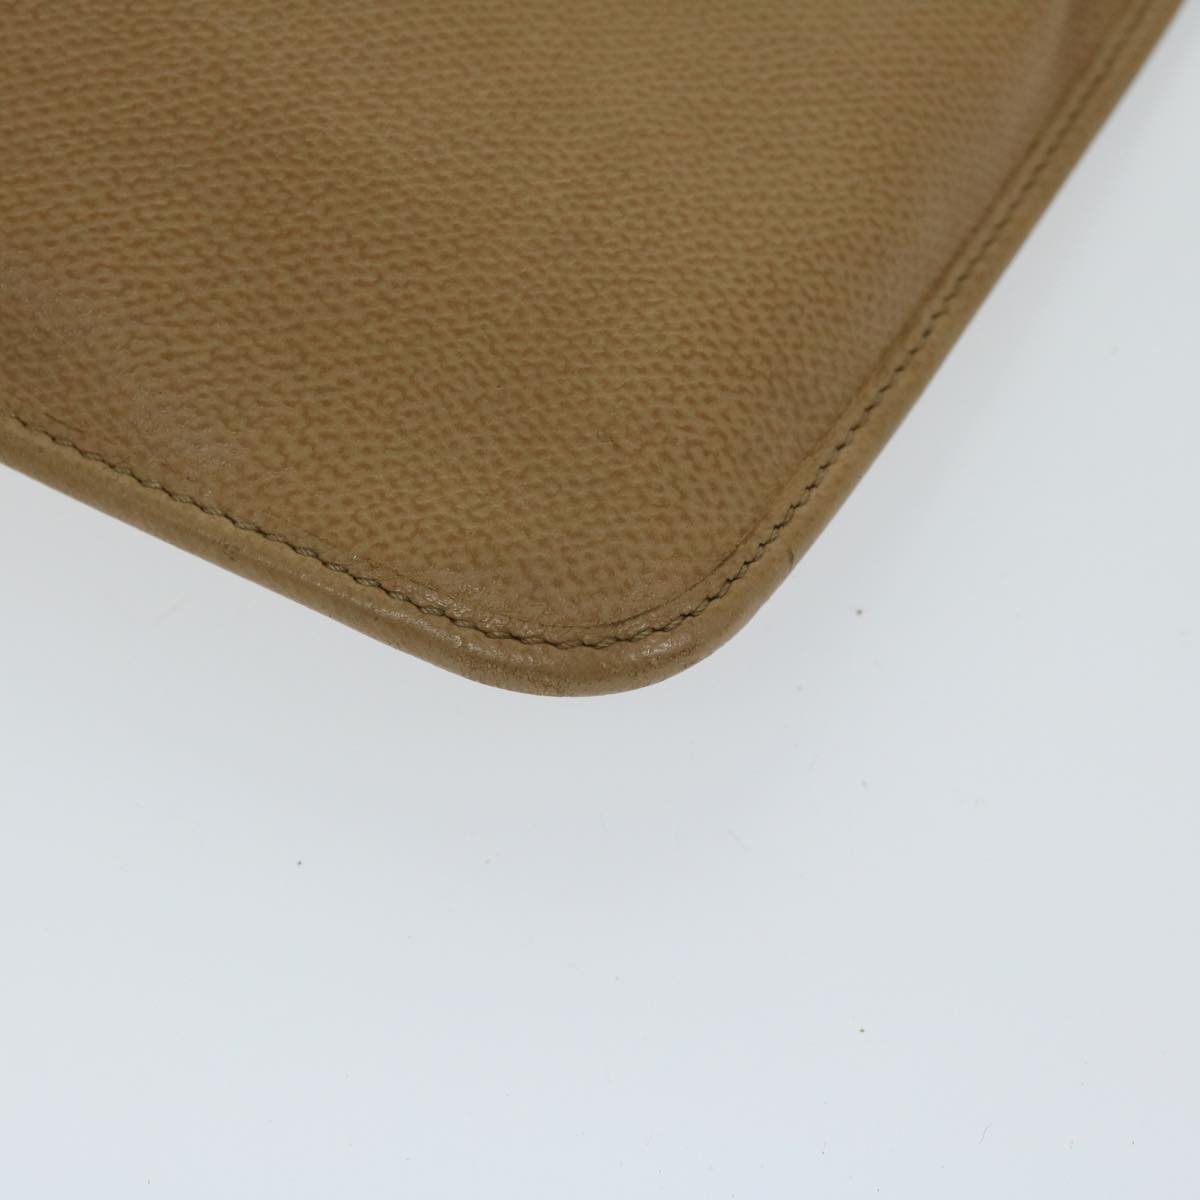 SAINT LAURENT Shoulder Bag Leather Beige Auth ar11525